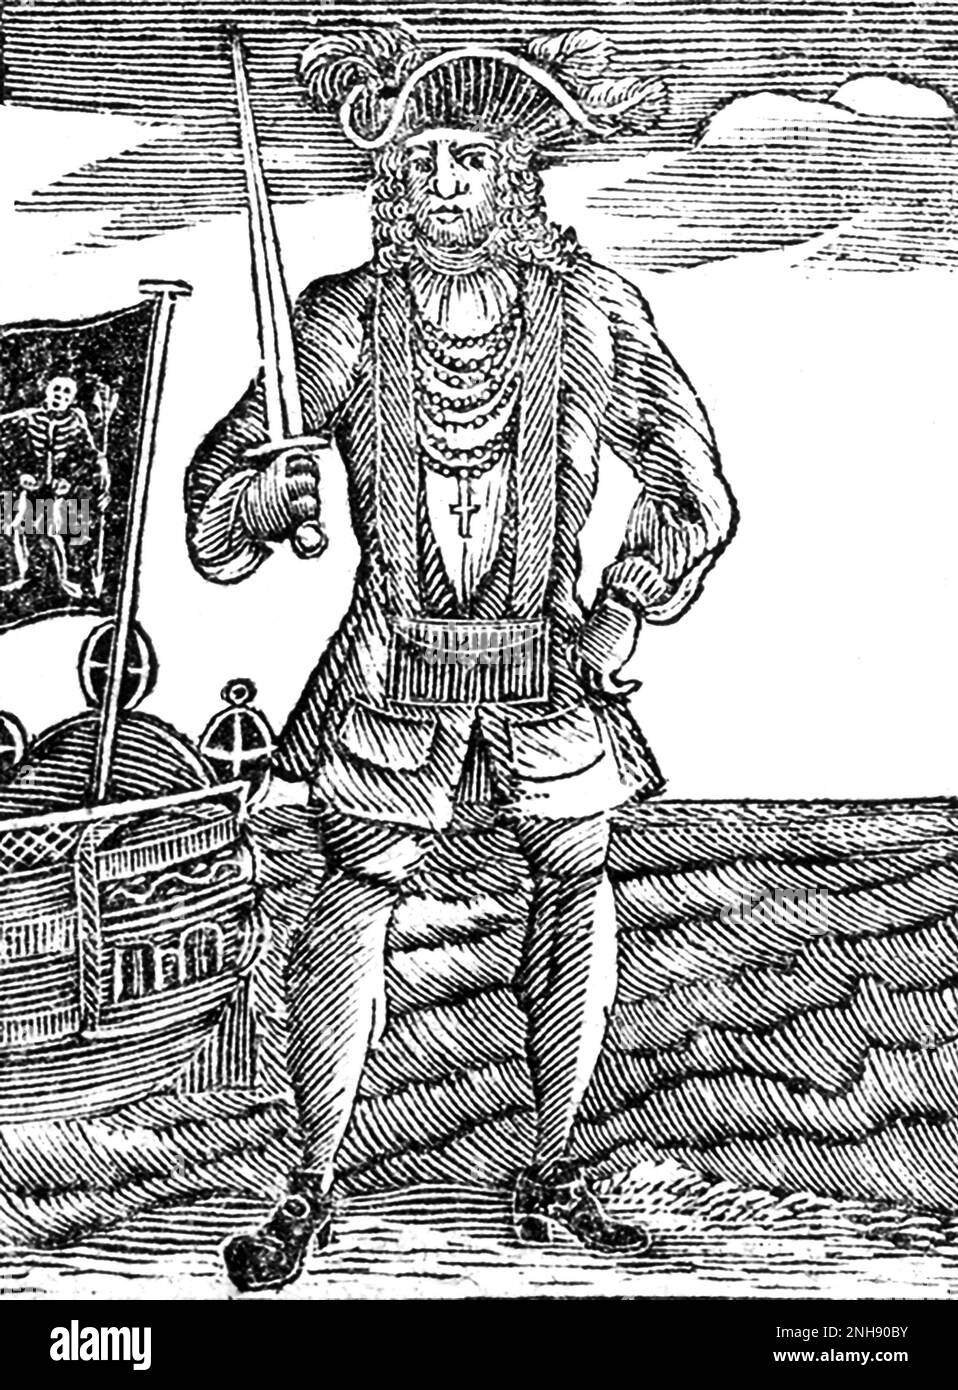 Bartholomew Roberts (1682-1722), geboren John Roberts, war ein walisischer Pirat und der erfolgreichste Pirat des Goldenen Zeitalters der Piraterie, gemessen an gefangenen Schiffen. Illustration aus „die Geschichte und das Leben der berüchtigtsten Piraten und ihrer Crews“, 1725. Stockfoto